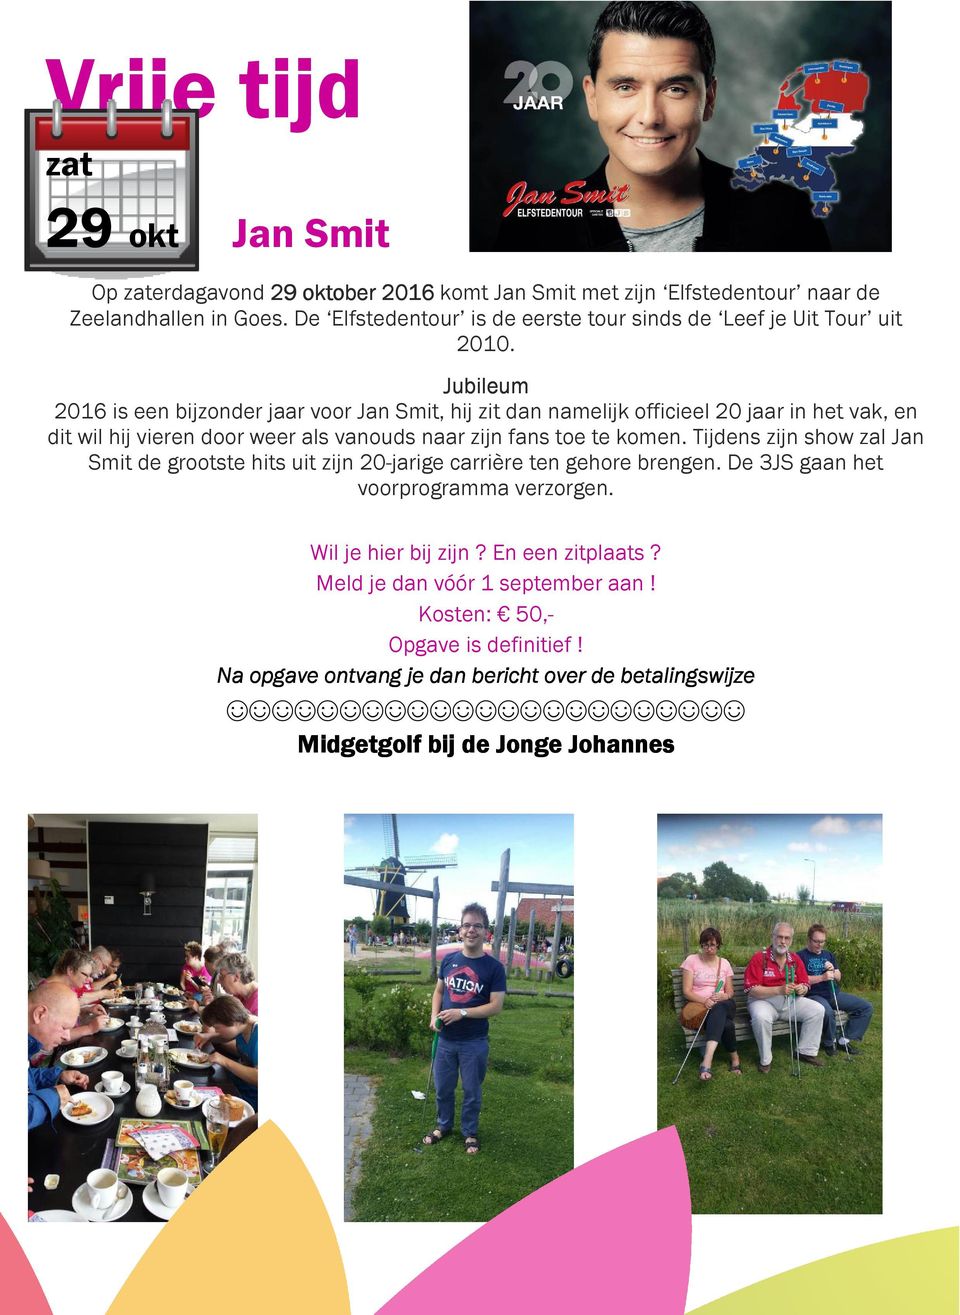 Jubileum 2016 is een bijzonder jaar voor Jan Smit, hij zit dan namelijk officieel 20 jaar in het vak, en dit wil hij vieren door weer als vanouds naar zijn fans toe te komen.